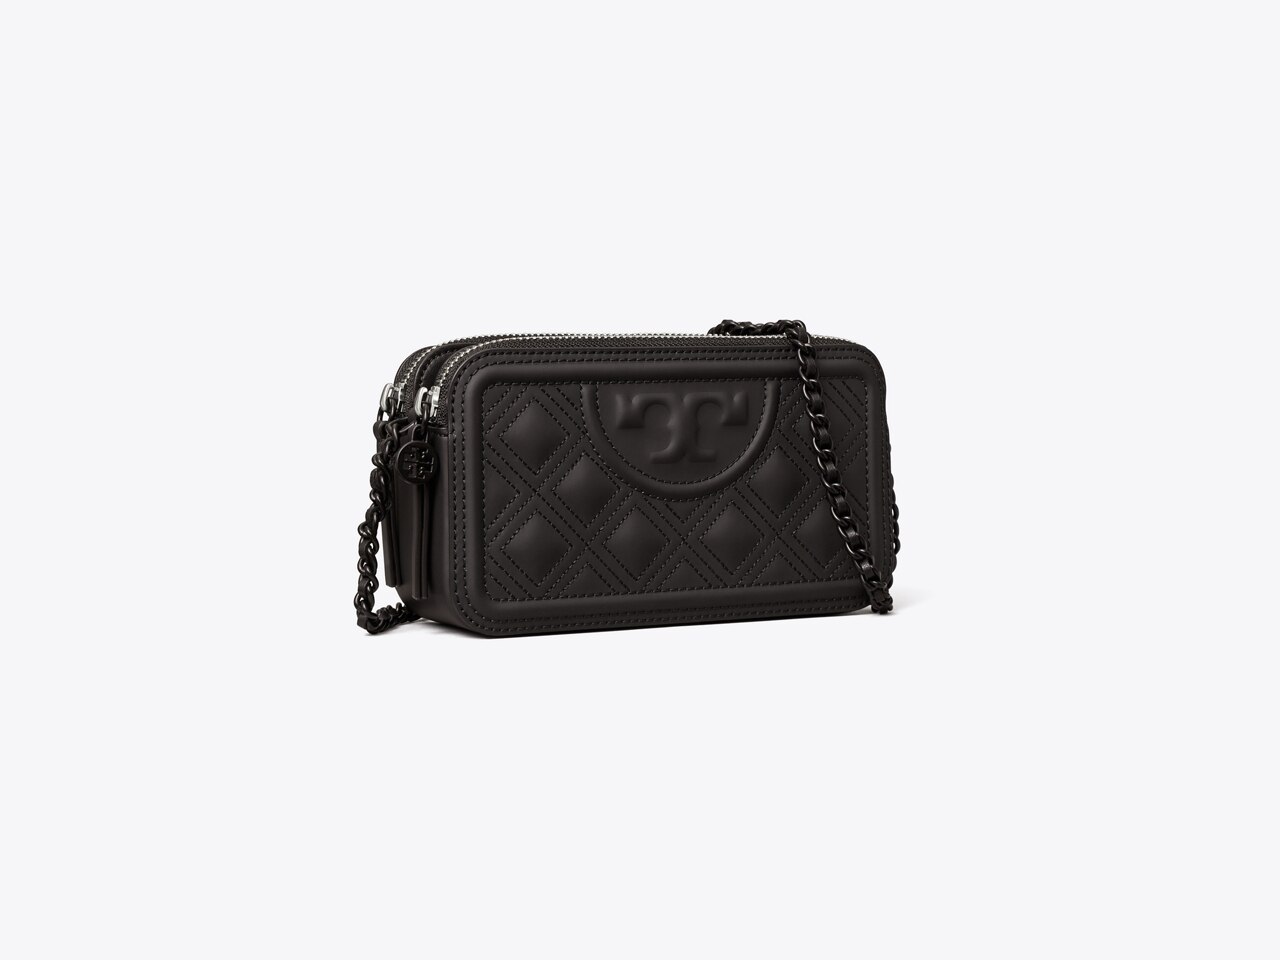 Tory Burch Women's Fleming Double Zip Mini Bag, Black, One Size